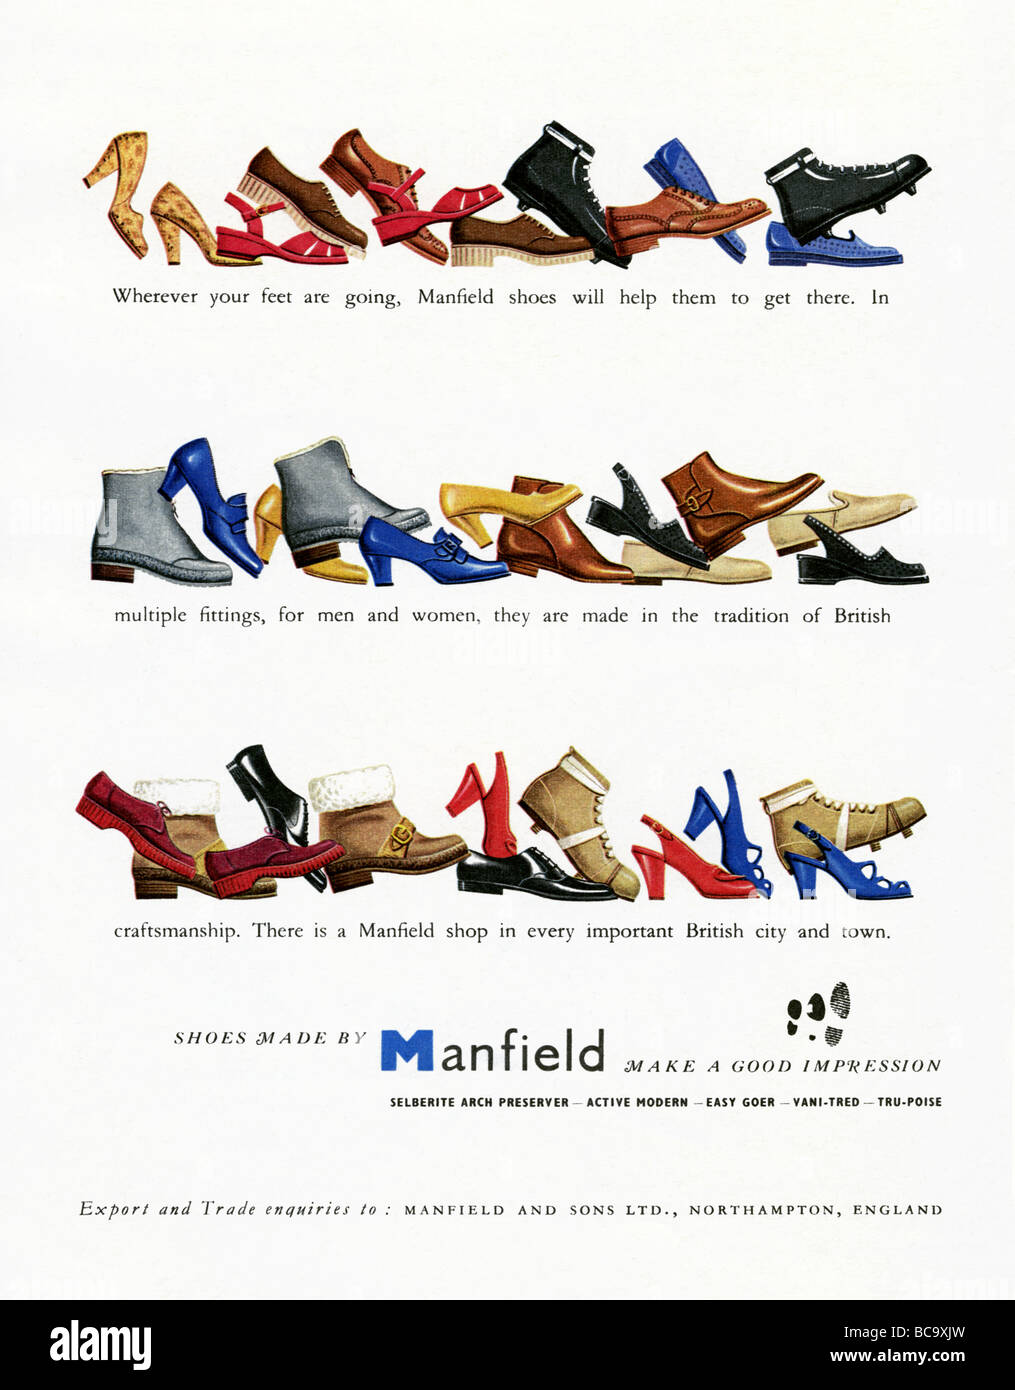 Couleur 1951 Publicité pour fabricant de chaussures Manfield, Northampton, Angleterre Banque D'Images